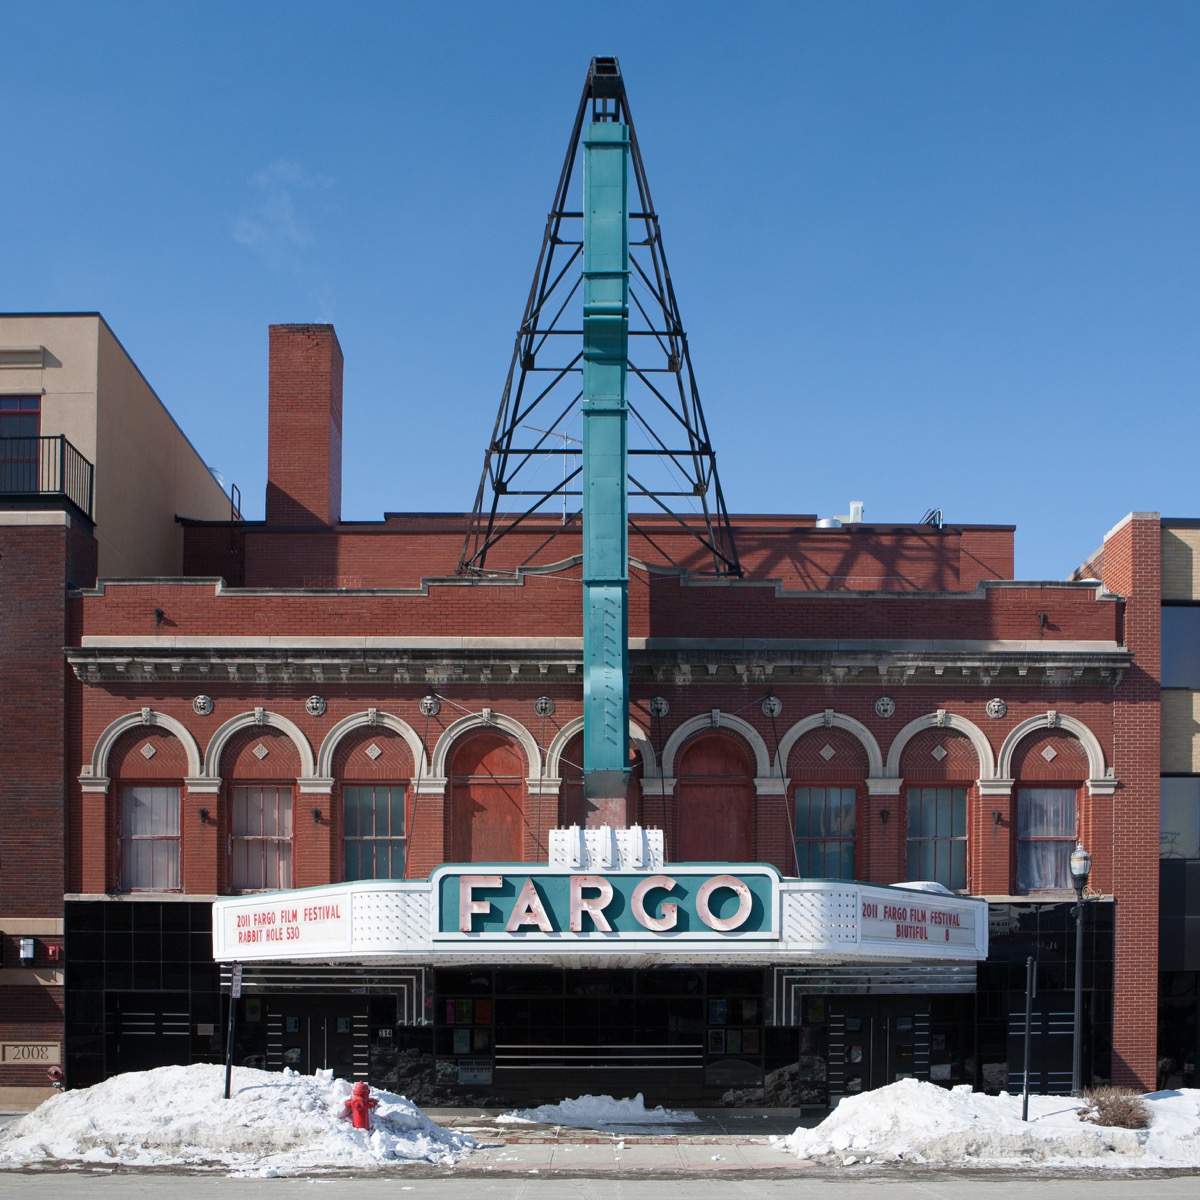 Snow outside the Fargo theatre in North Dakota